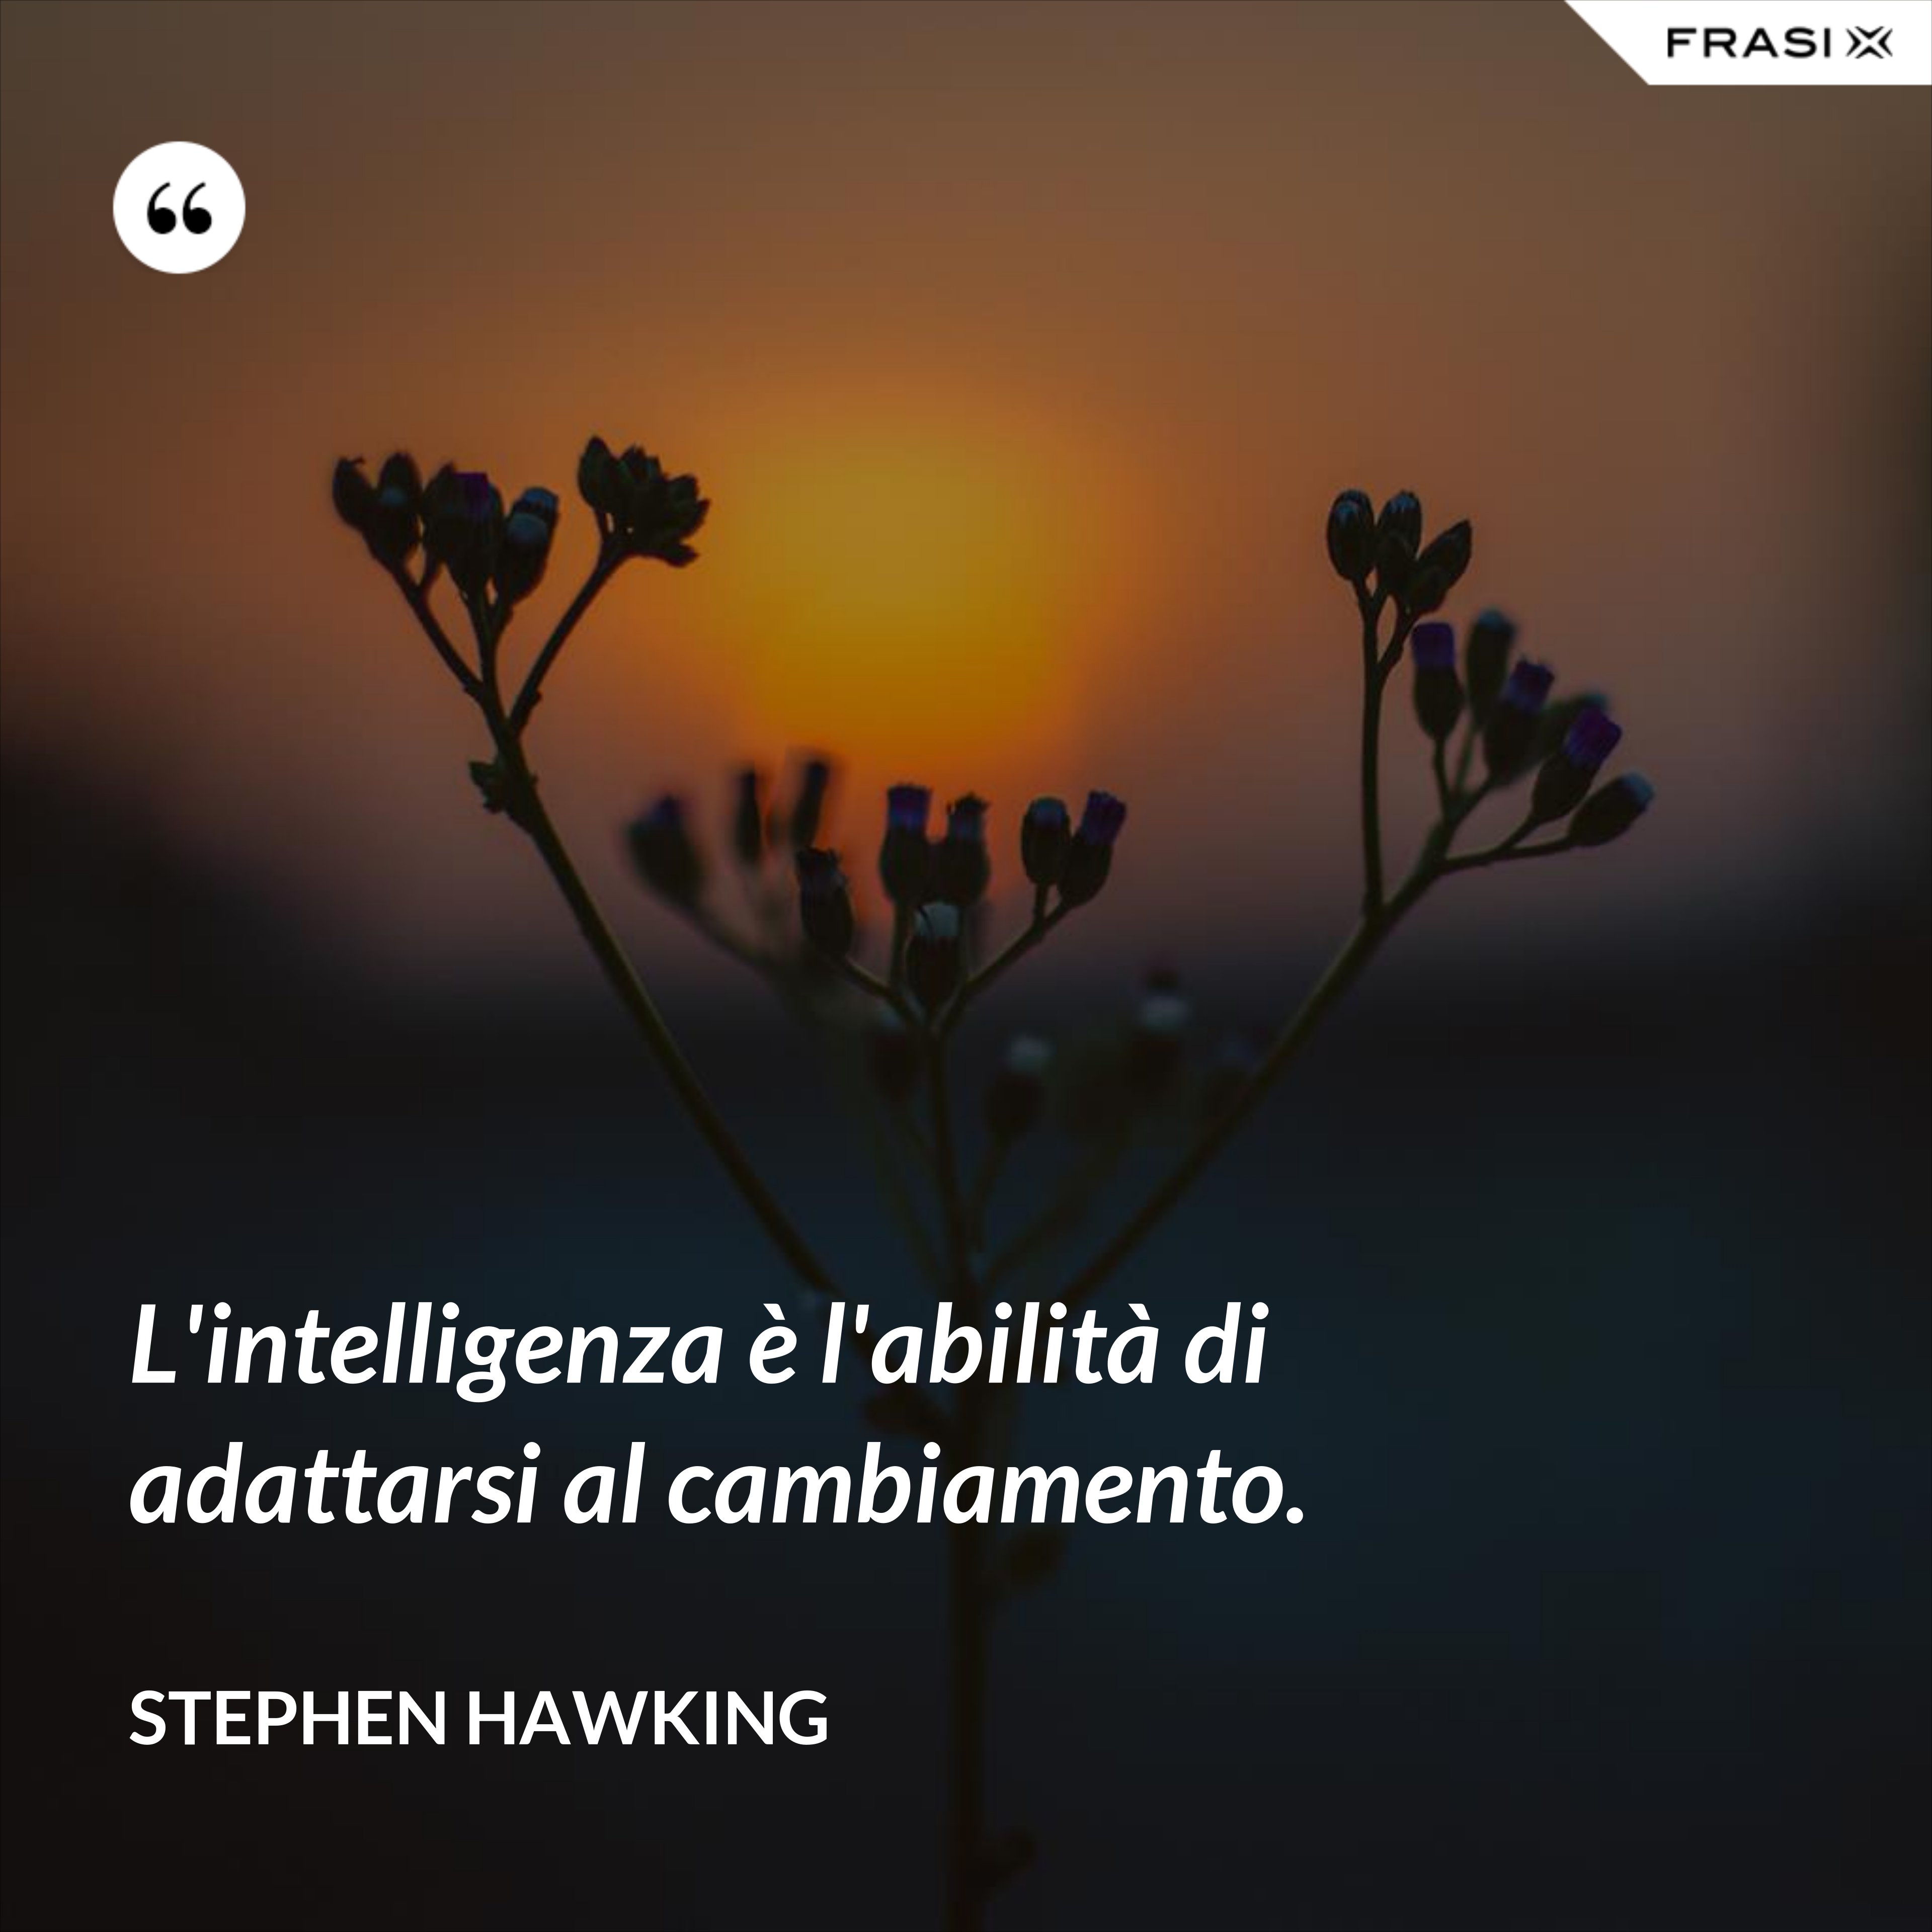 L'intelligenza è l'abilità di adattarsi al cambiamento. - Stephen Hawking